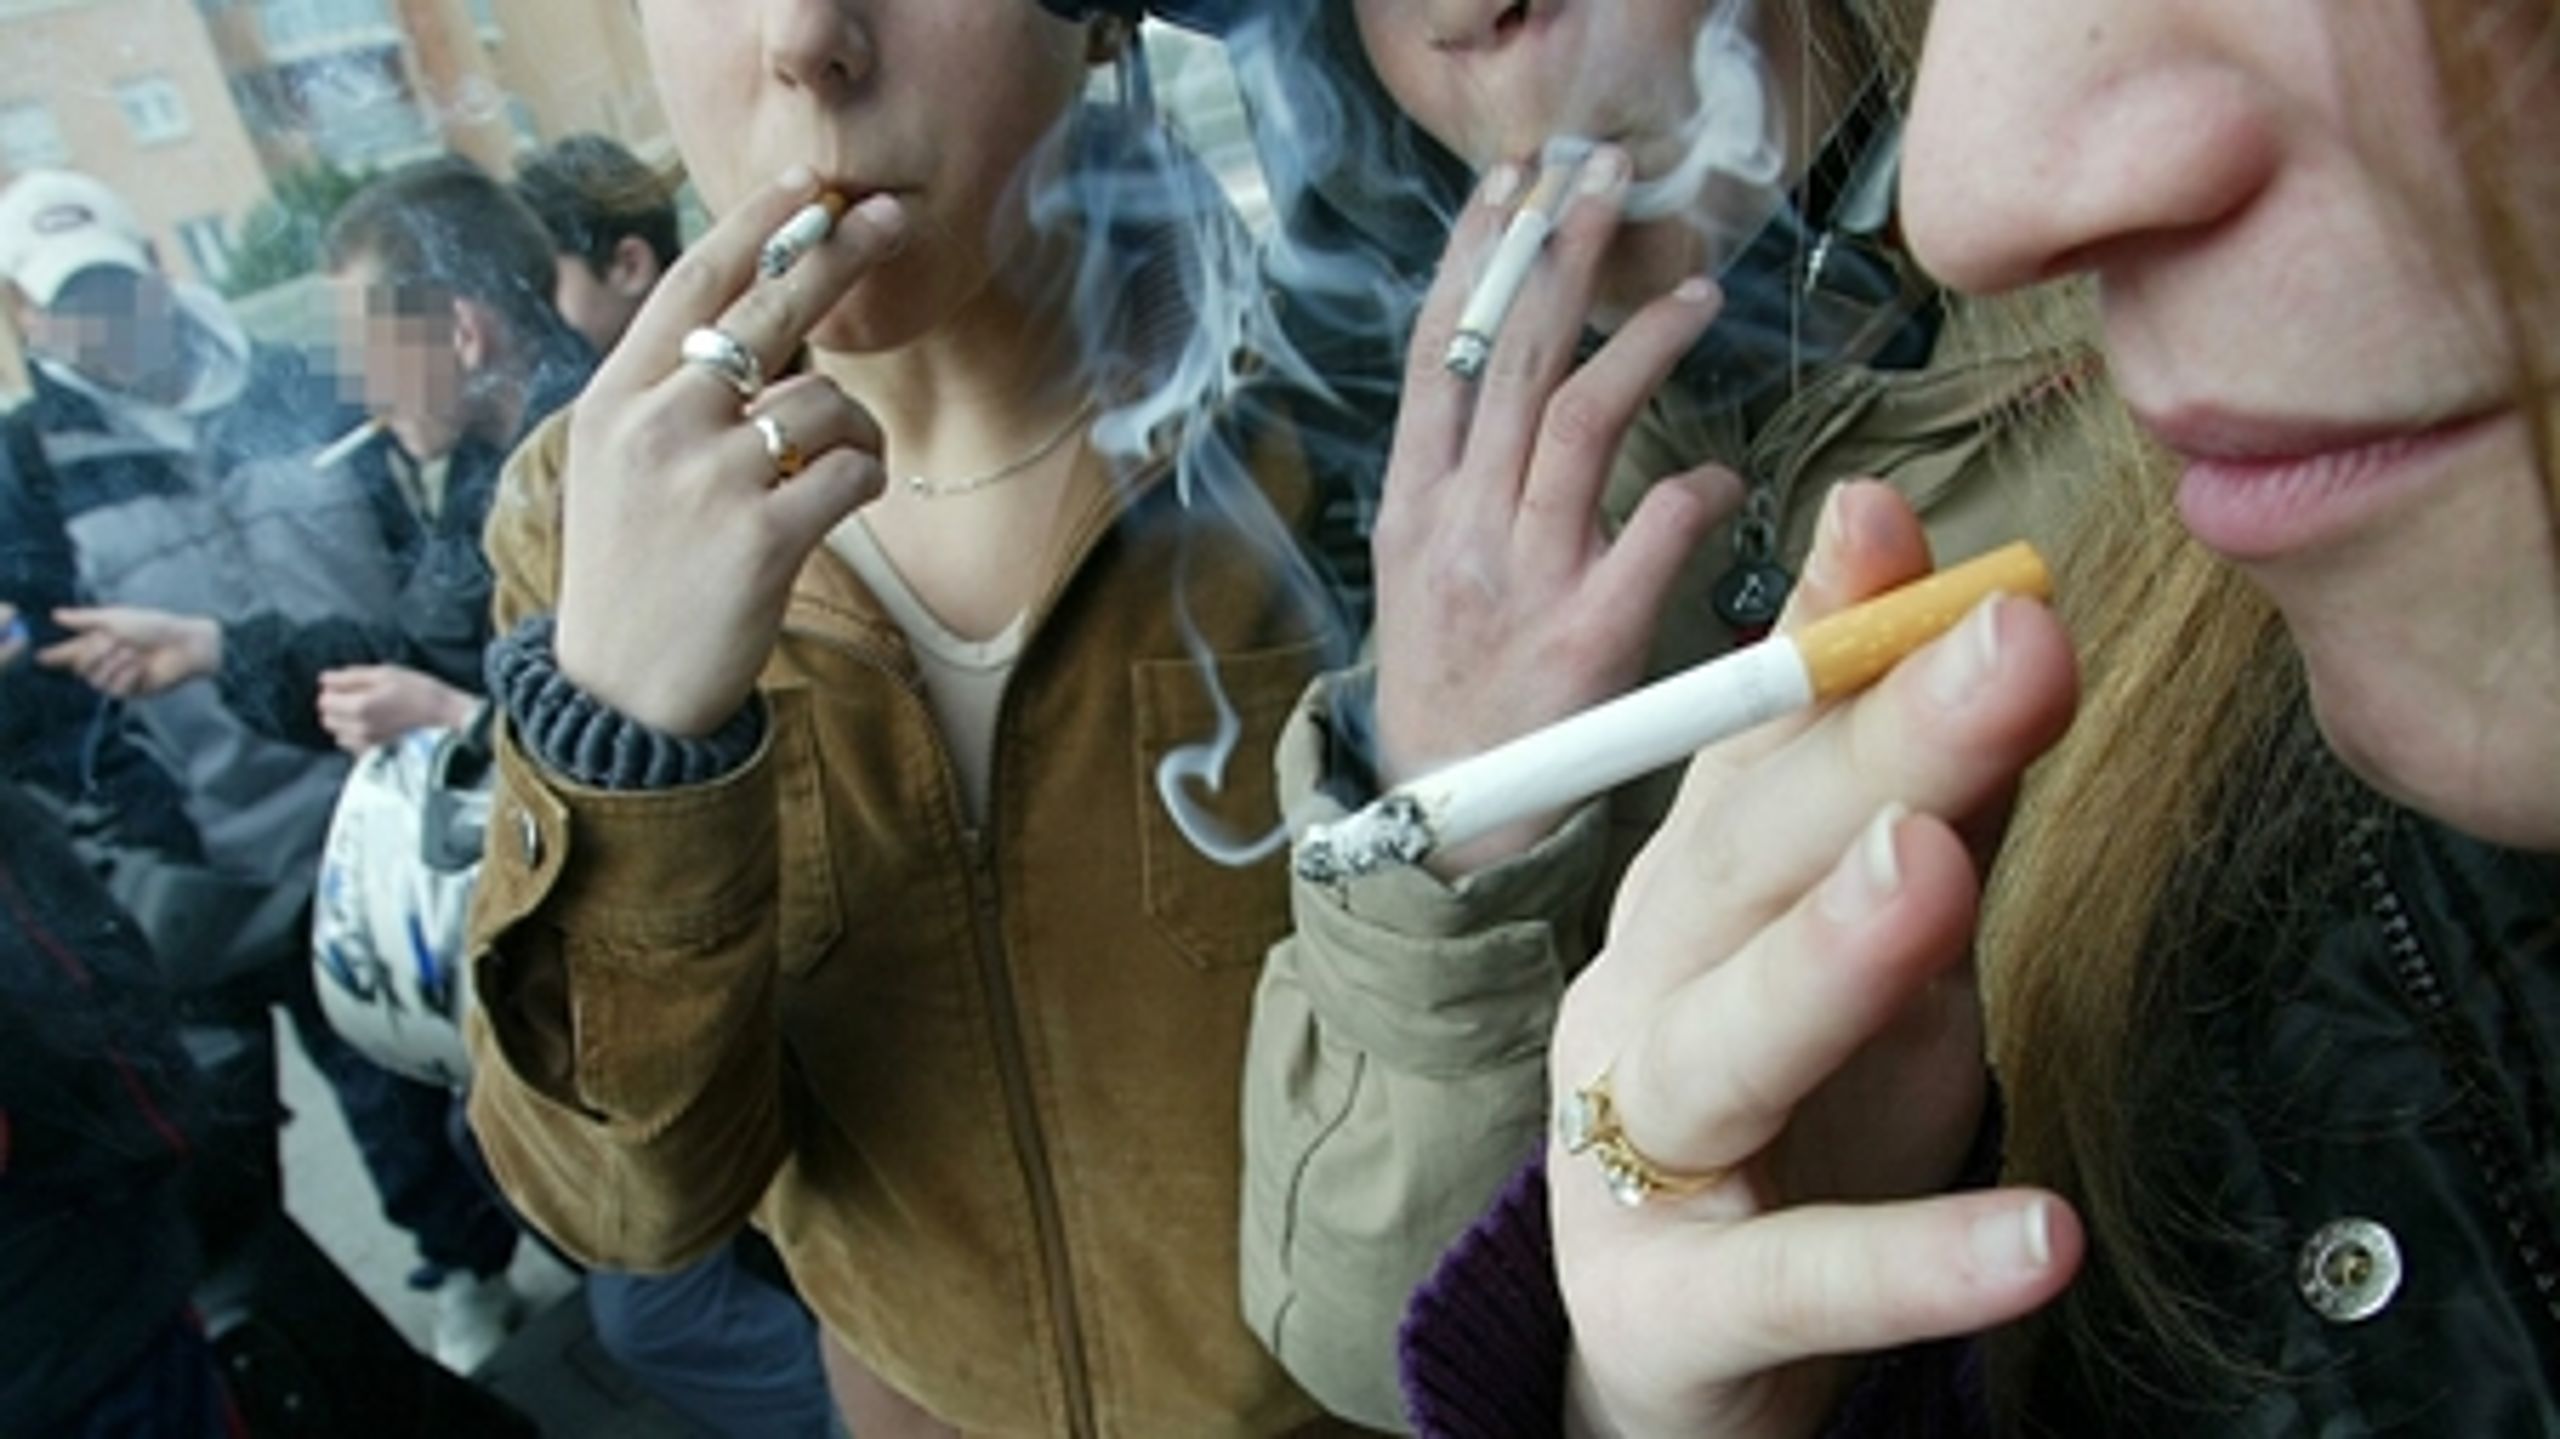 Europa-Parlamentet stemte tirsdag om tobaksdirektivet, som nu skal forhandles på plads med Ministerrådet. Tobaksdirektivet skal strammes, så færre unge begynder at ryge.